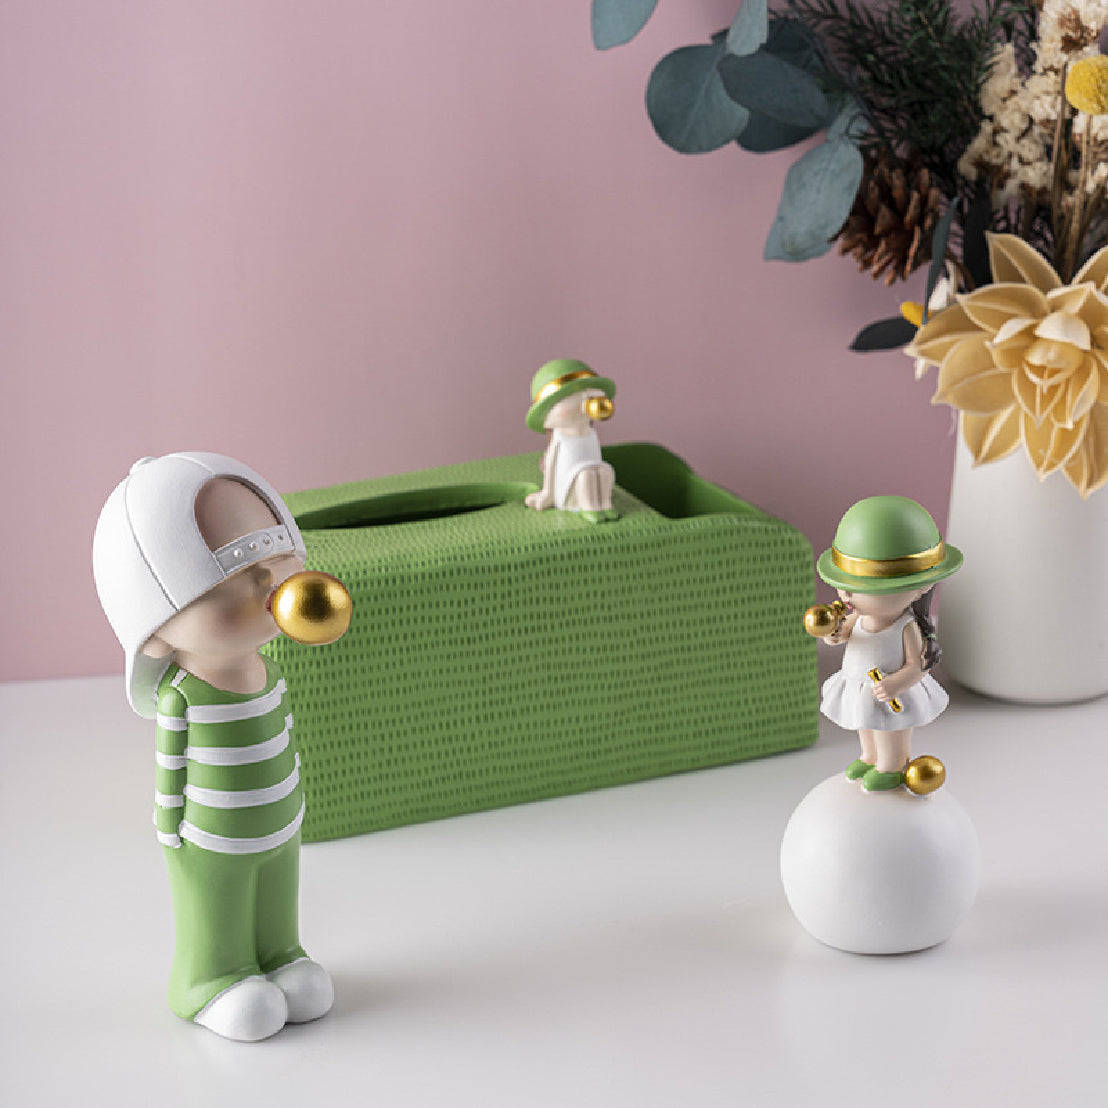 バブルガール ティッシュボックスホルダー 9.45 x 4.72 x 6.3インチ かわいいクリエイティブホームデコレーションフィギュア 子供の誕生日ギフト 寝室 リビングルームの装飾